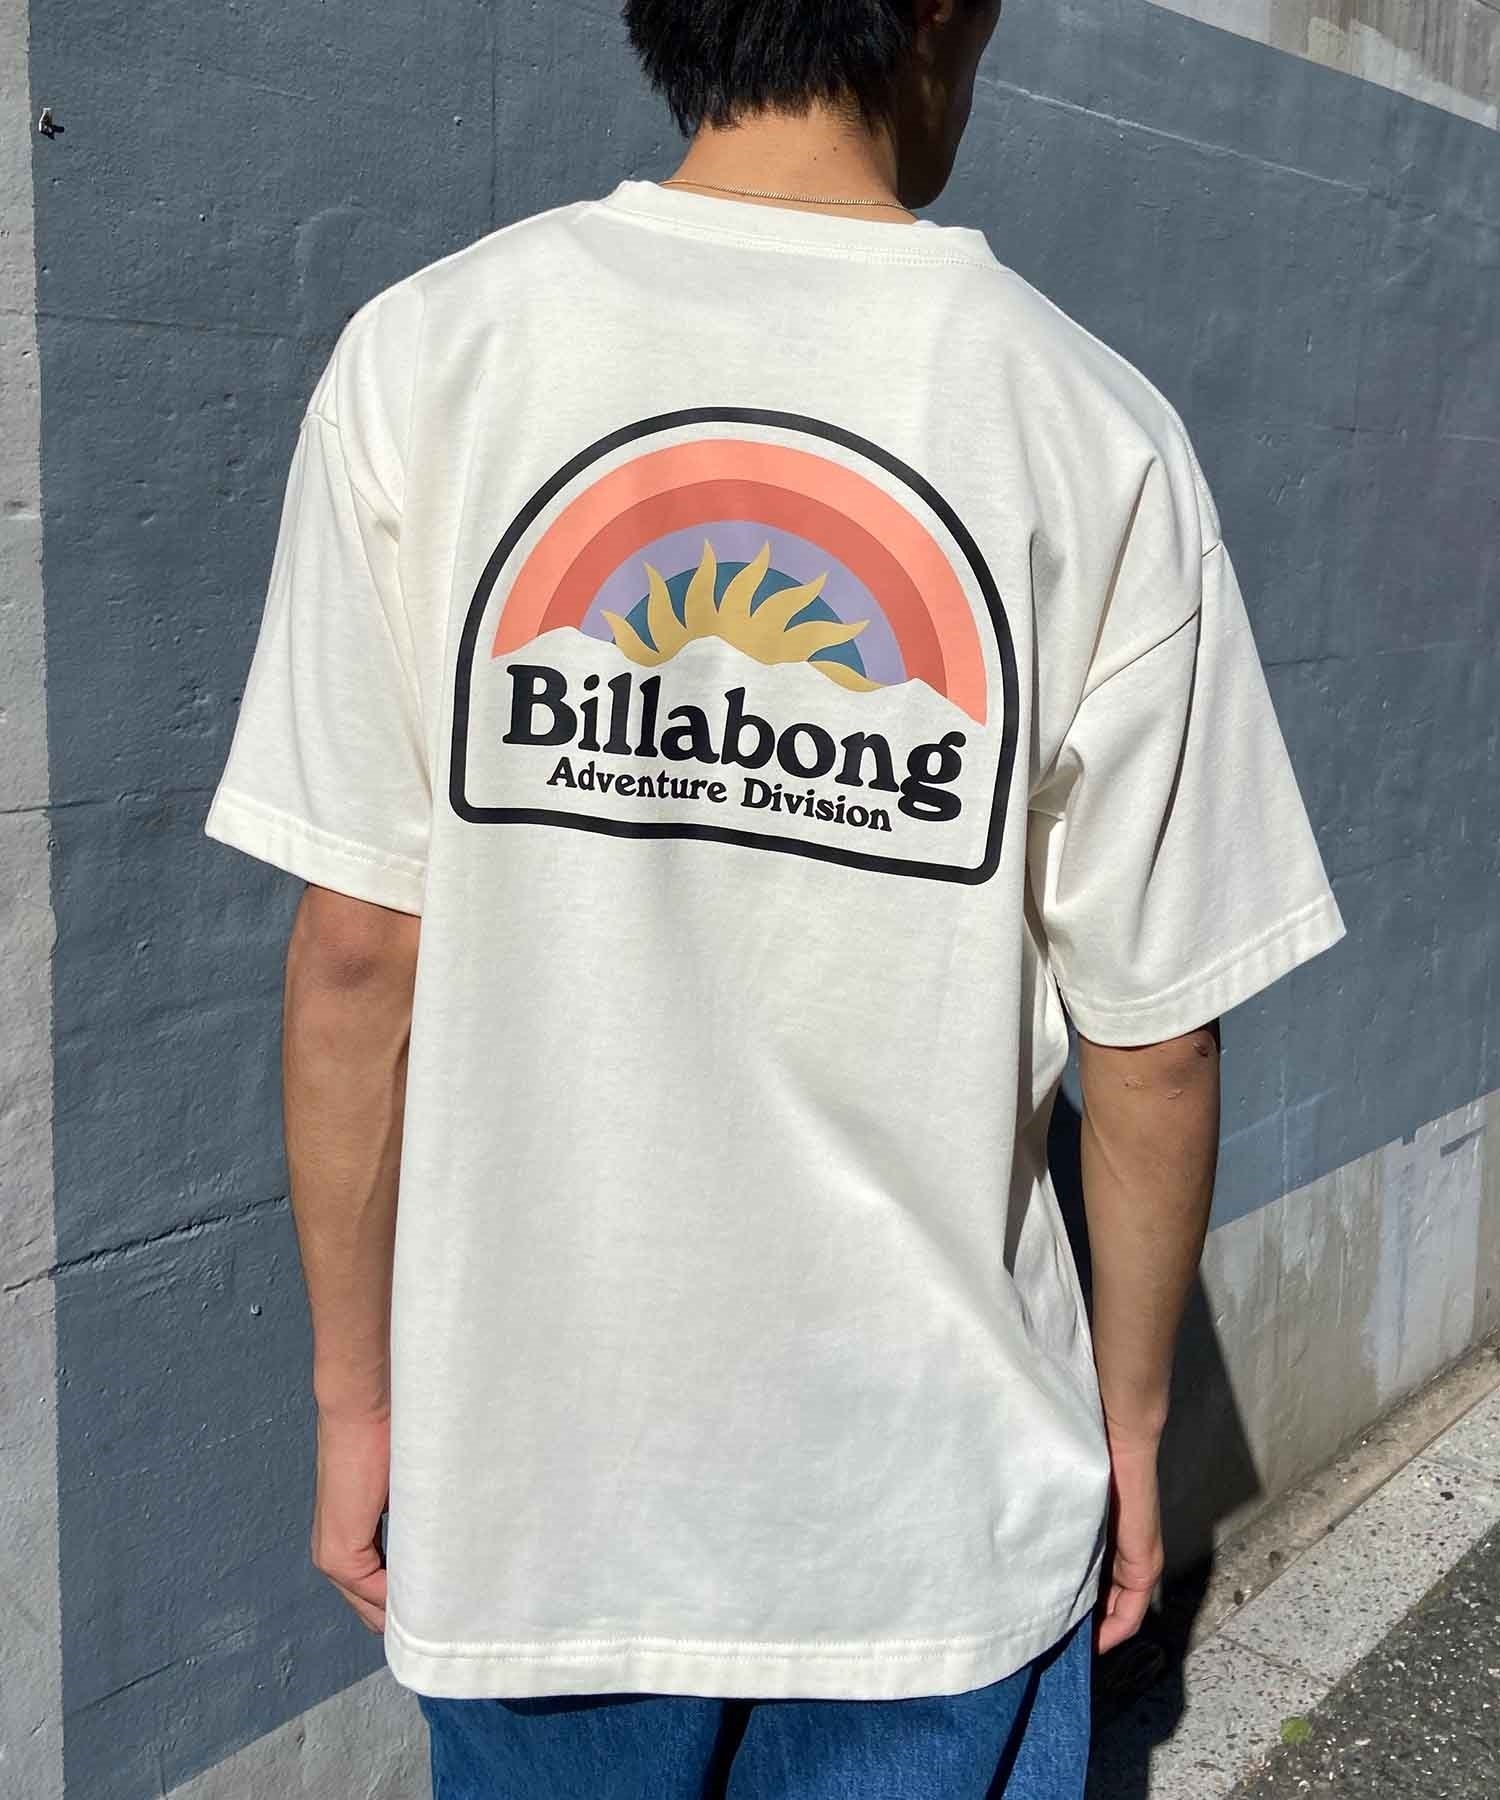 【マトメガイ対象】BILLABONG ビラボン SUN UP メンズ Tシャツ 半袖 バックプリント 速乾 UVケア BE011-219(WA2-M)